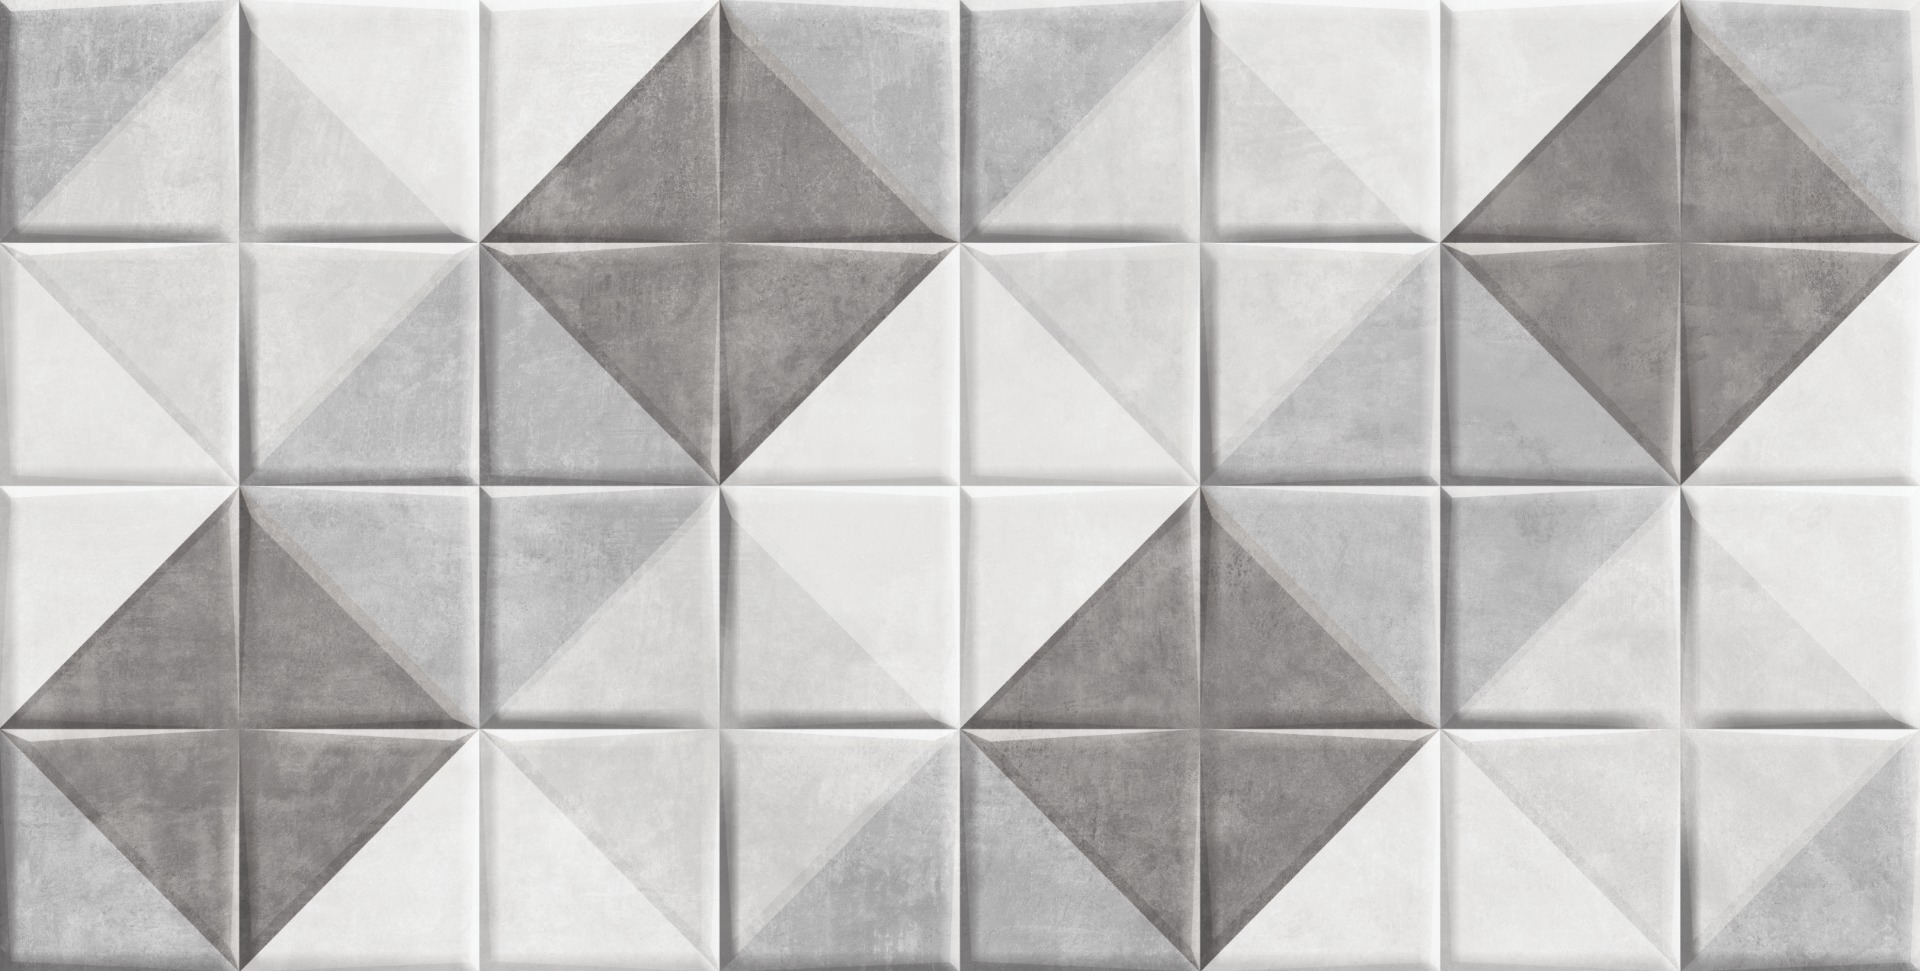 Pattern Tiles for Bathroom Tiles, Living Room Tiles, Kitchen Tiles, Bedroom Tiles, Accent Tiles, Automotive Tiles, Bar/Restaurant, Commercial/Office